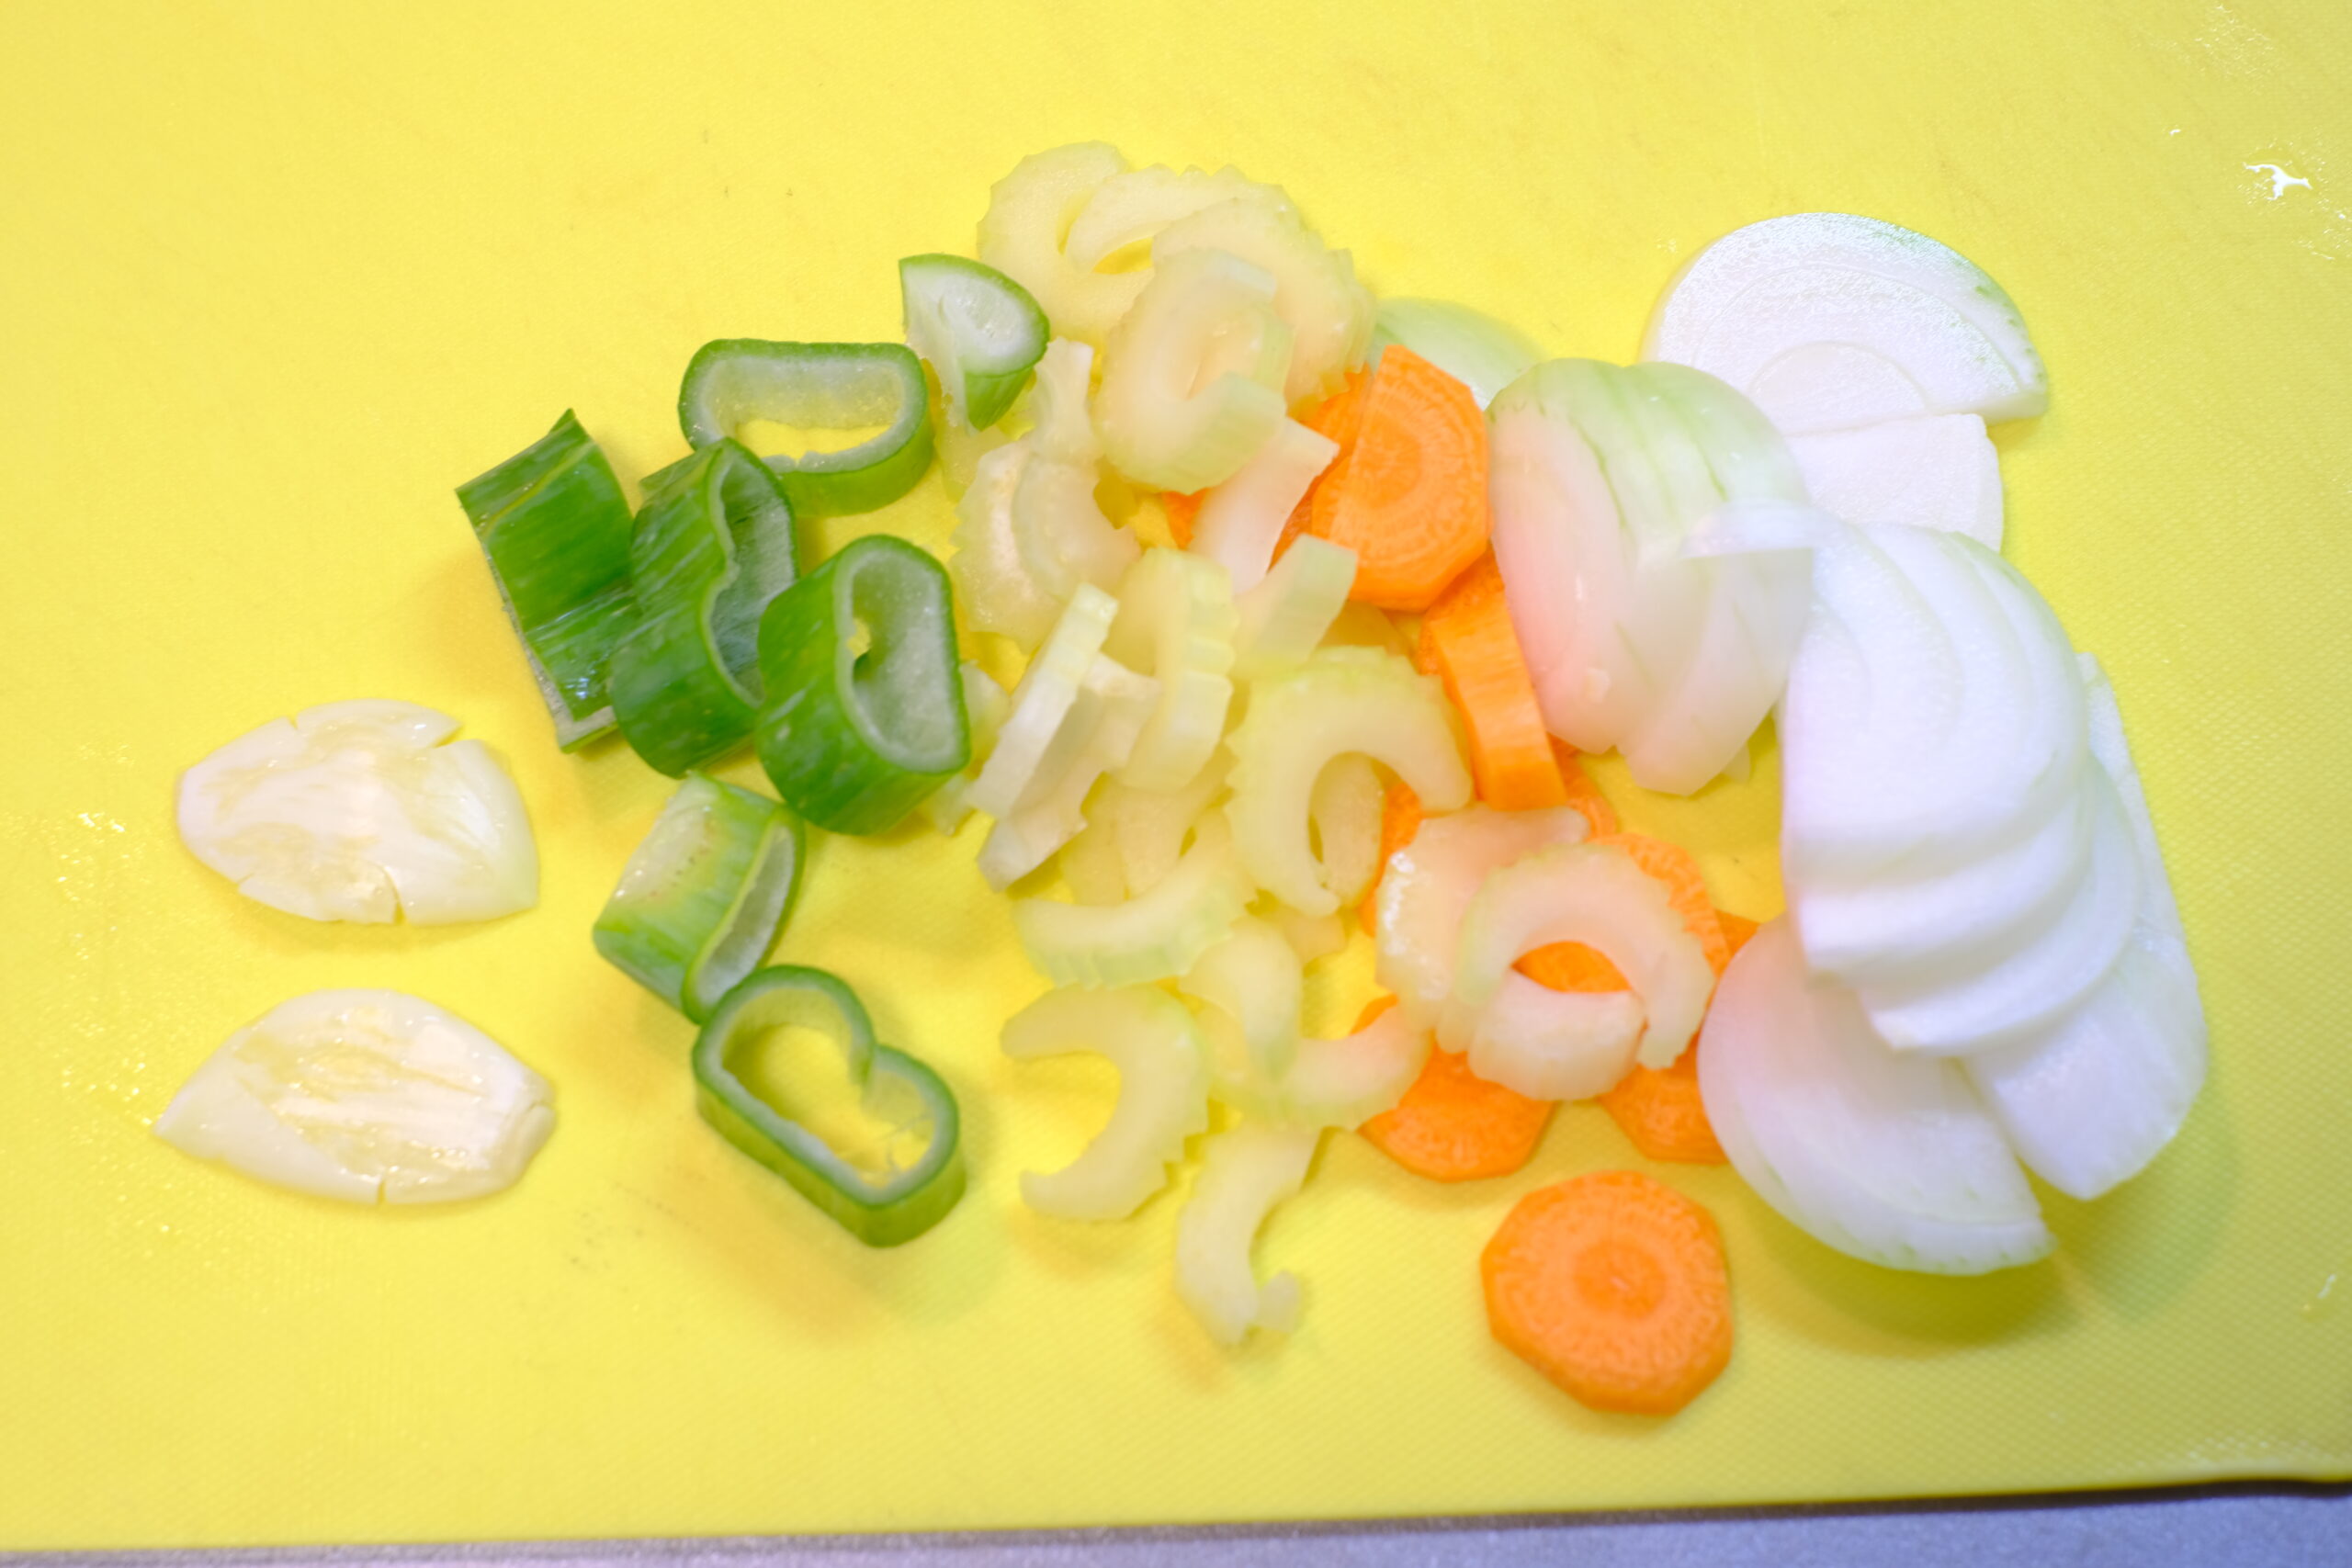 潰したニンニクとスライスした端材野菜の画像です